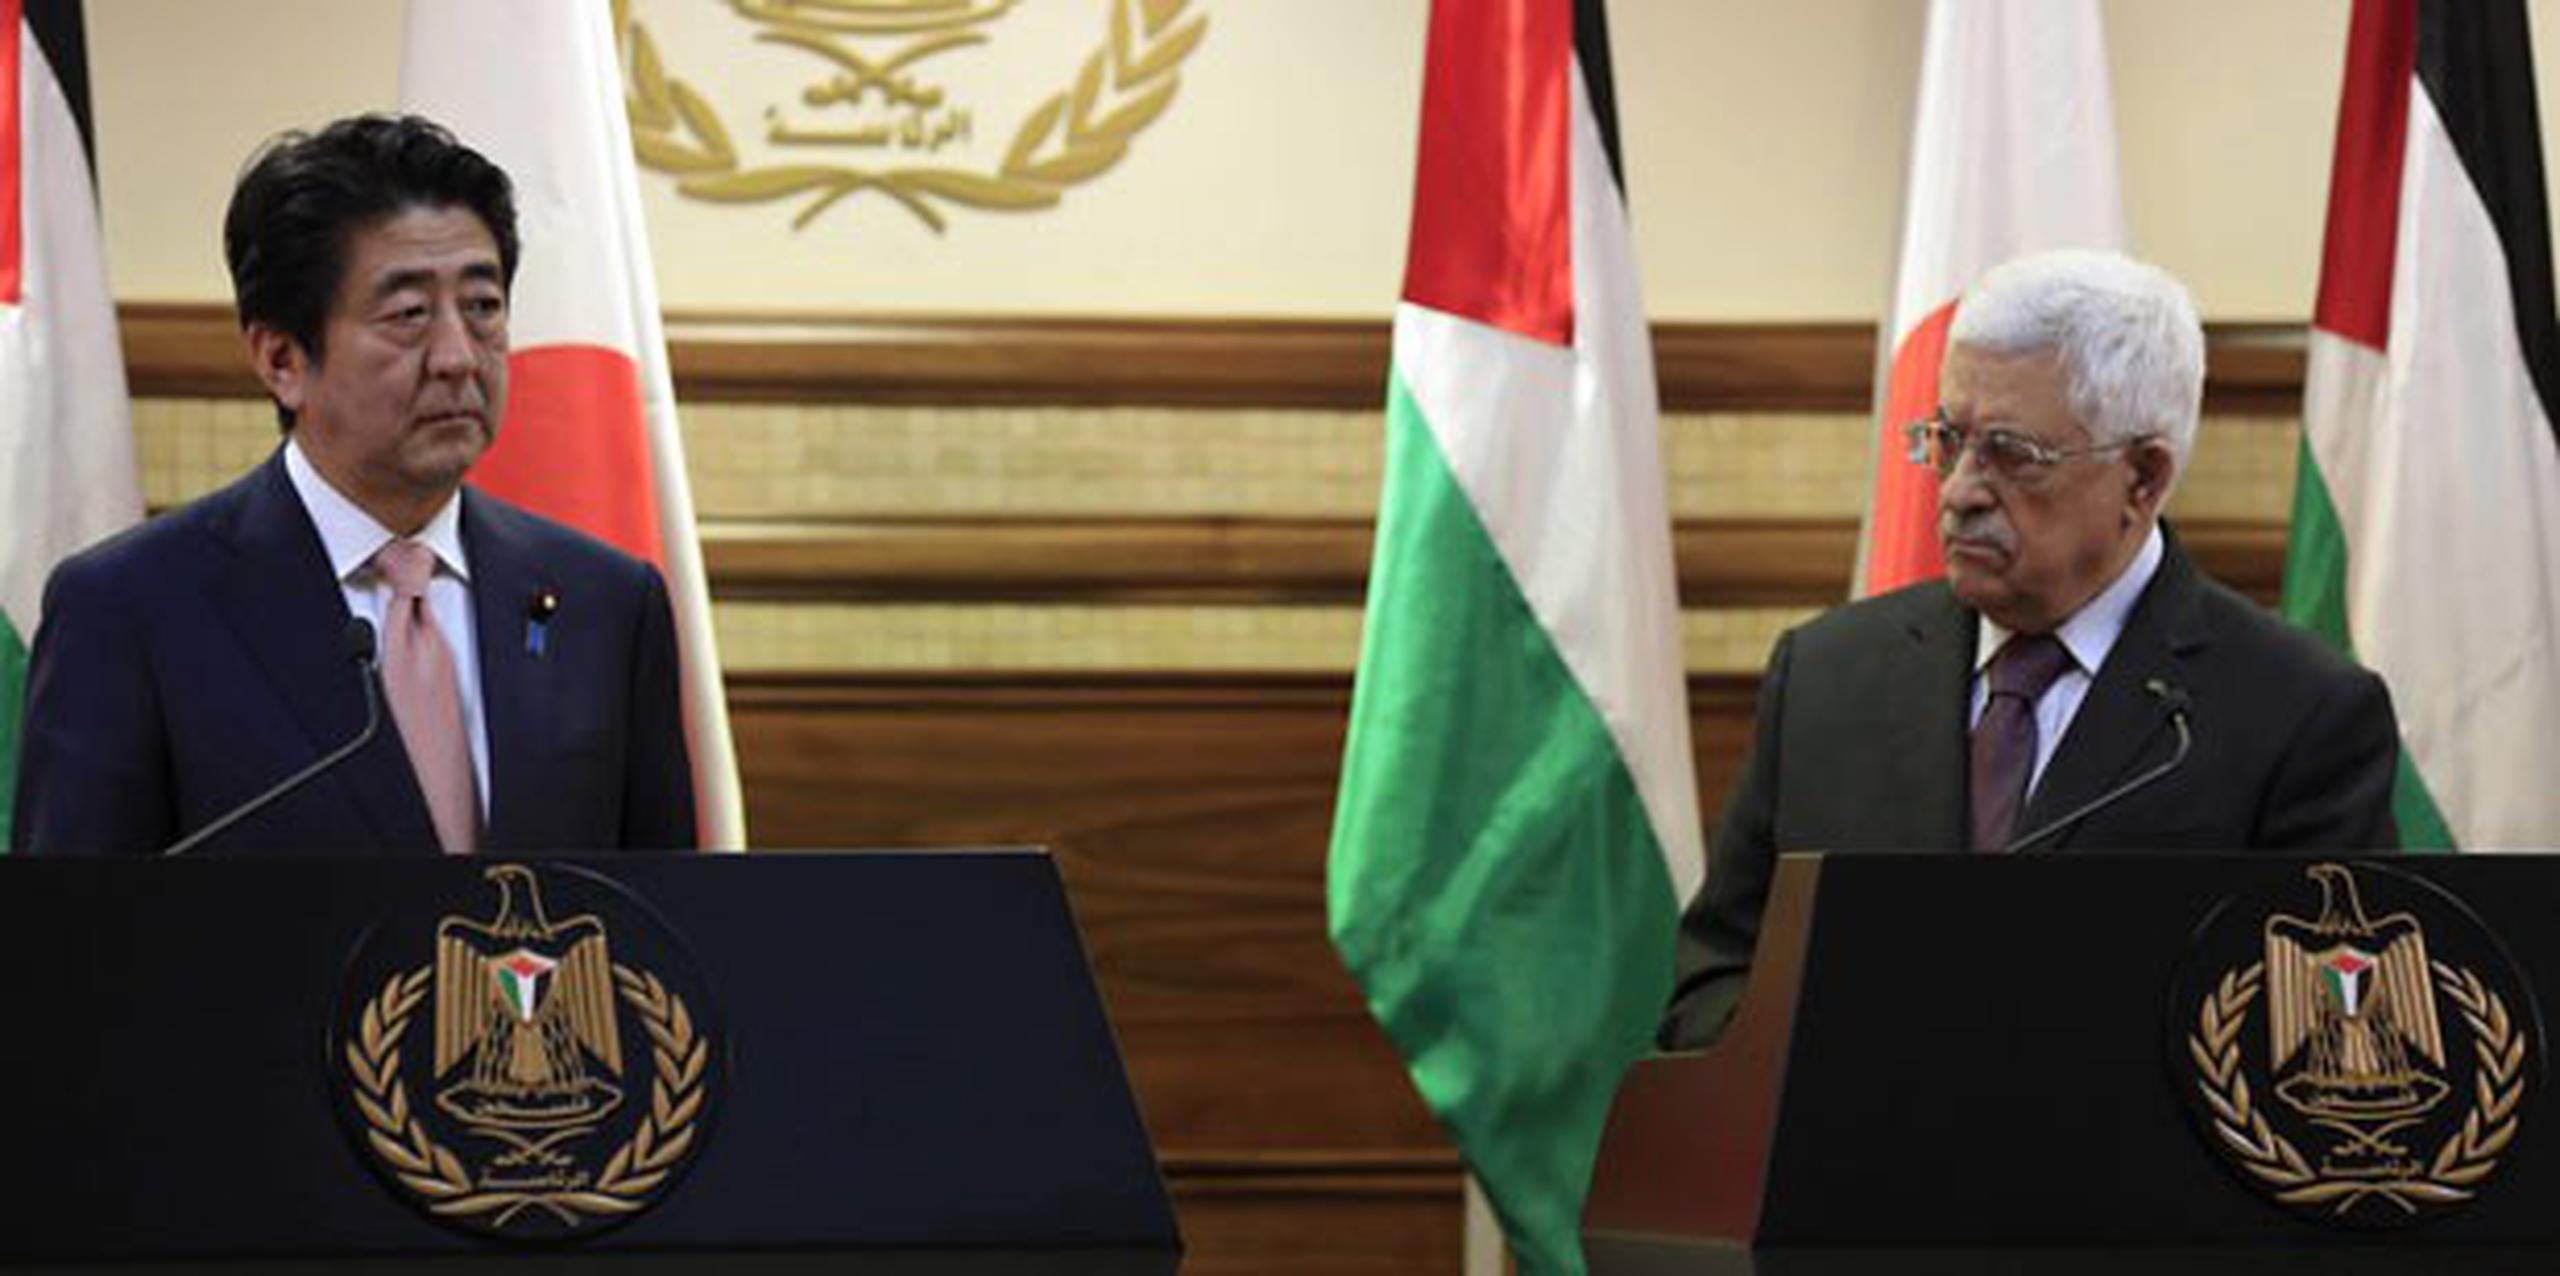 El Gobierno japonés ha puesto todas las esperanzas en la capacidad de negociación de Jordania. (EFE/Alaa Badarneh)